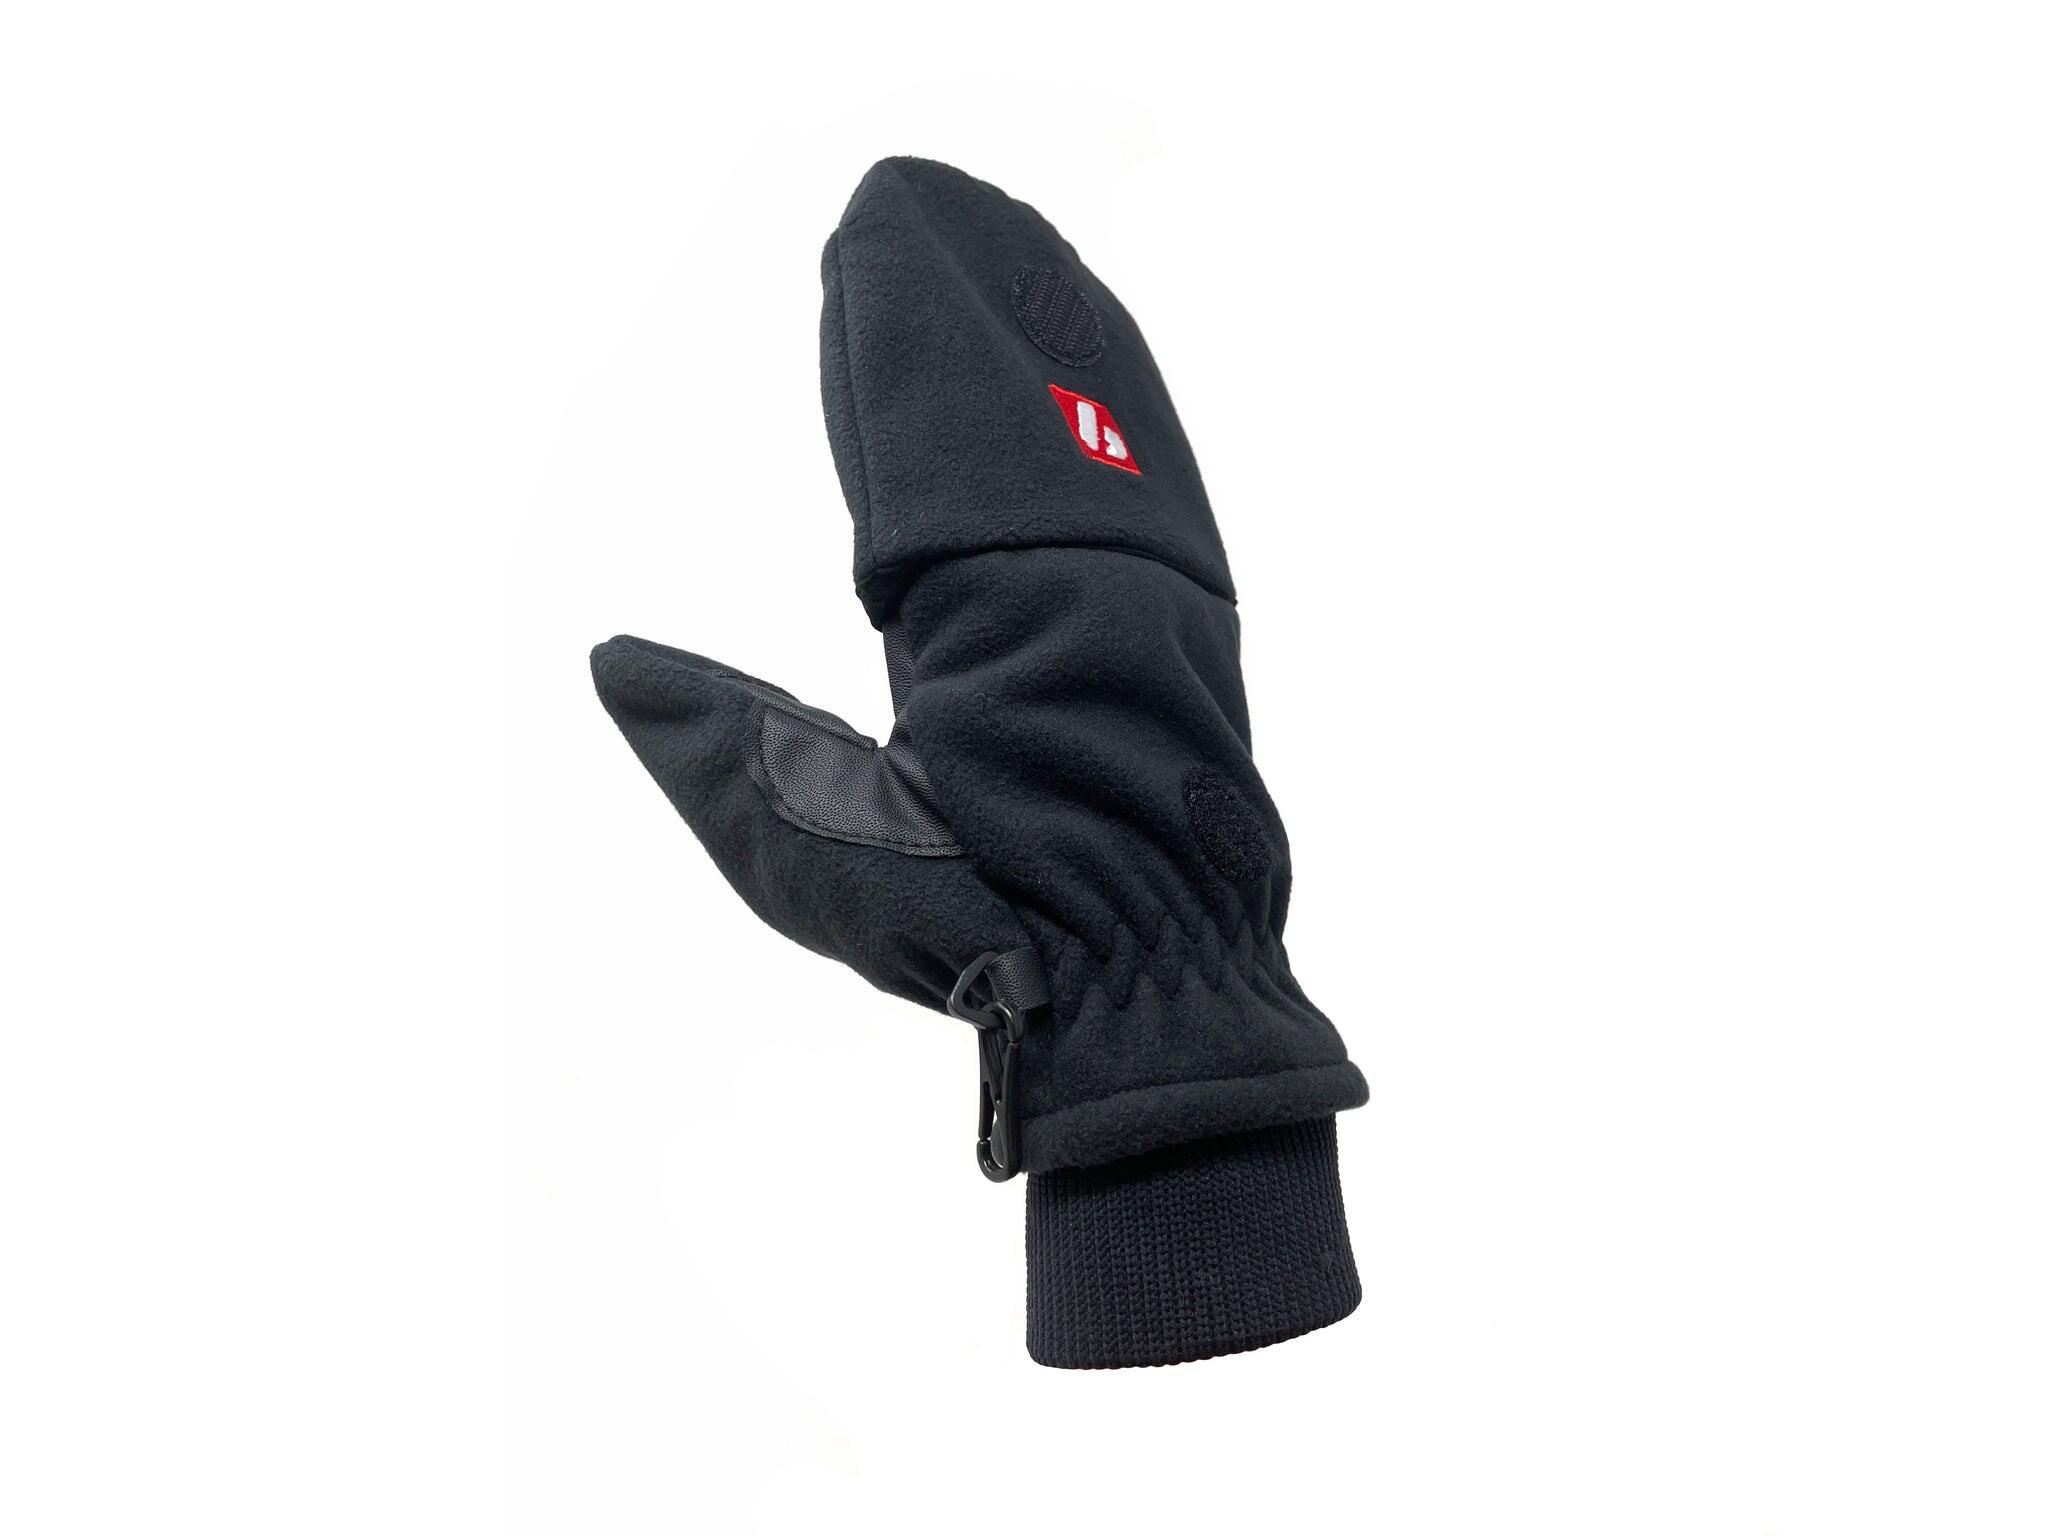  NBG-02 ski gloves 2/5